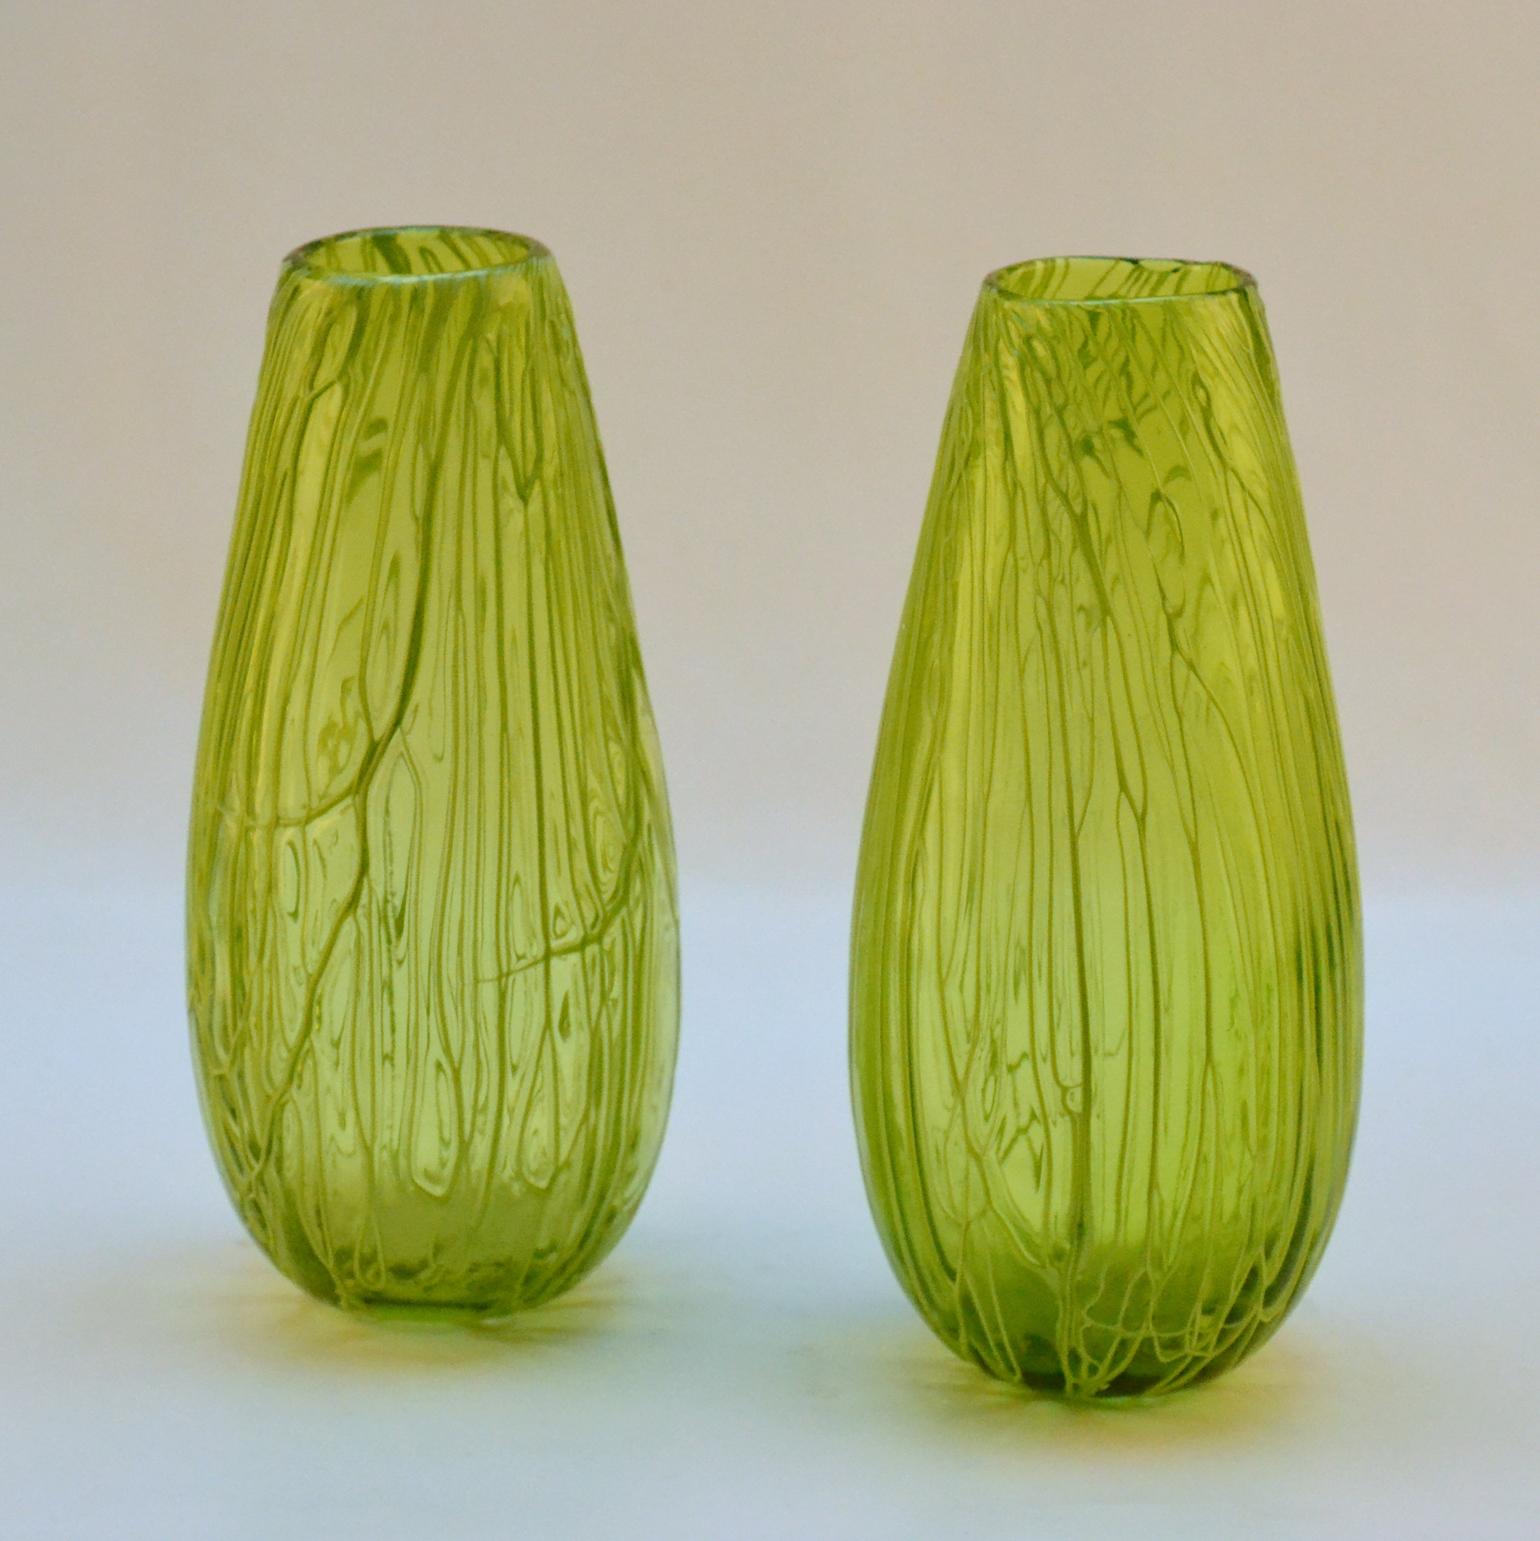 Cette paire de vases d'un vert acide vif a été réalisée à l'aide de la technique du Caldo, souvent utilisée à Murano, qui consiste à faire courir des fils de spaghetti sur la surface, sur le corps, pour créer ce relief texturé, pendant le processus